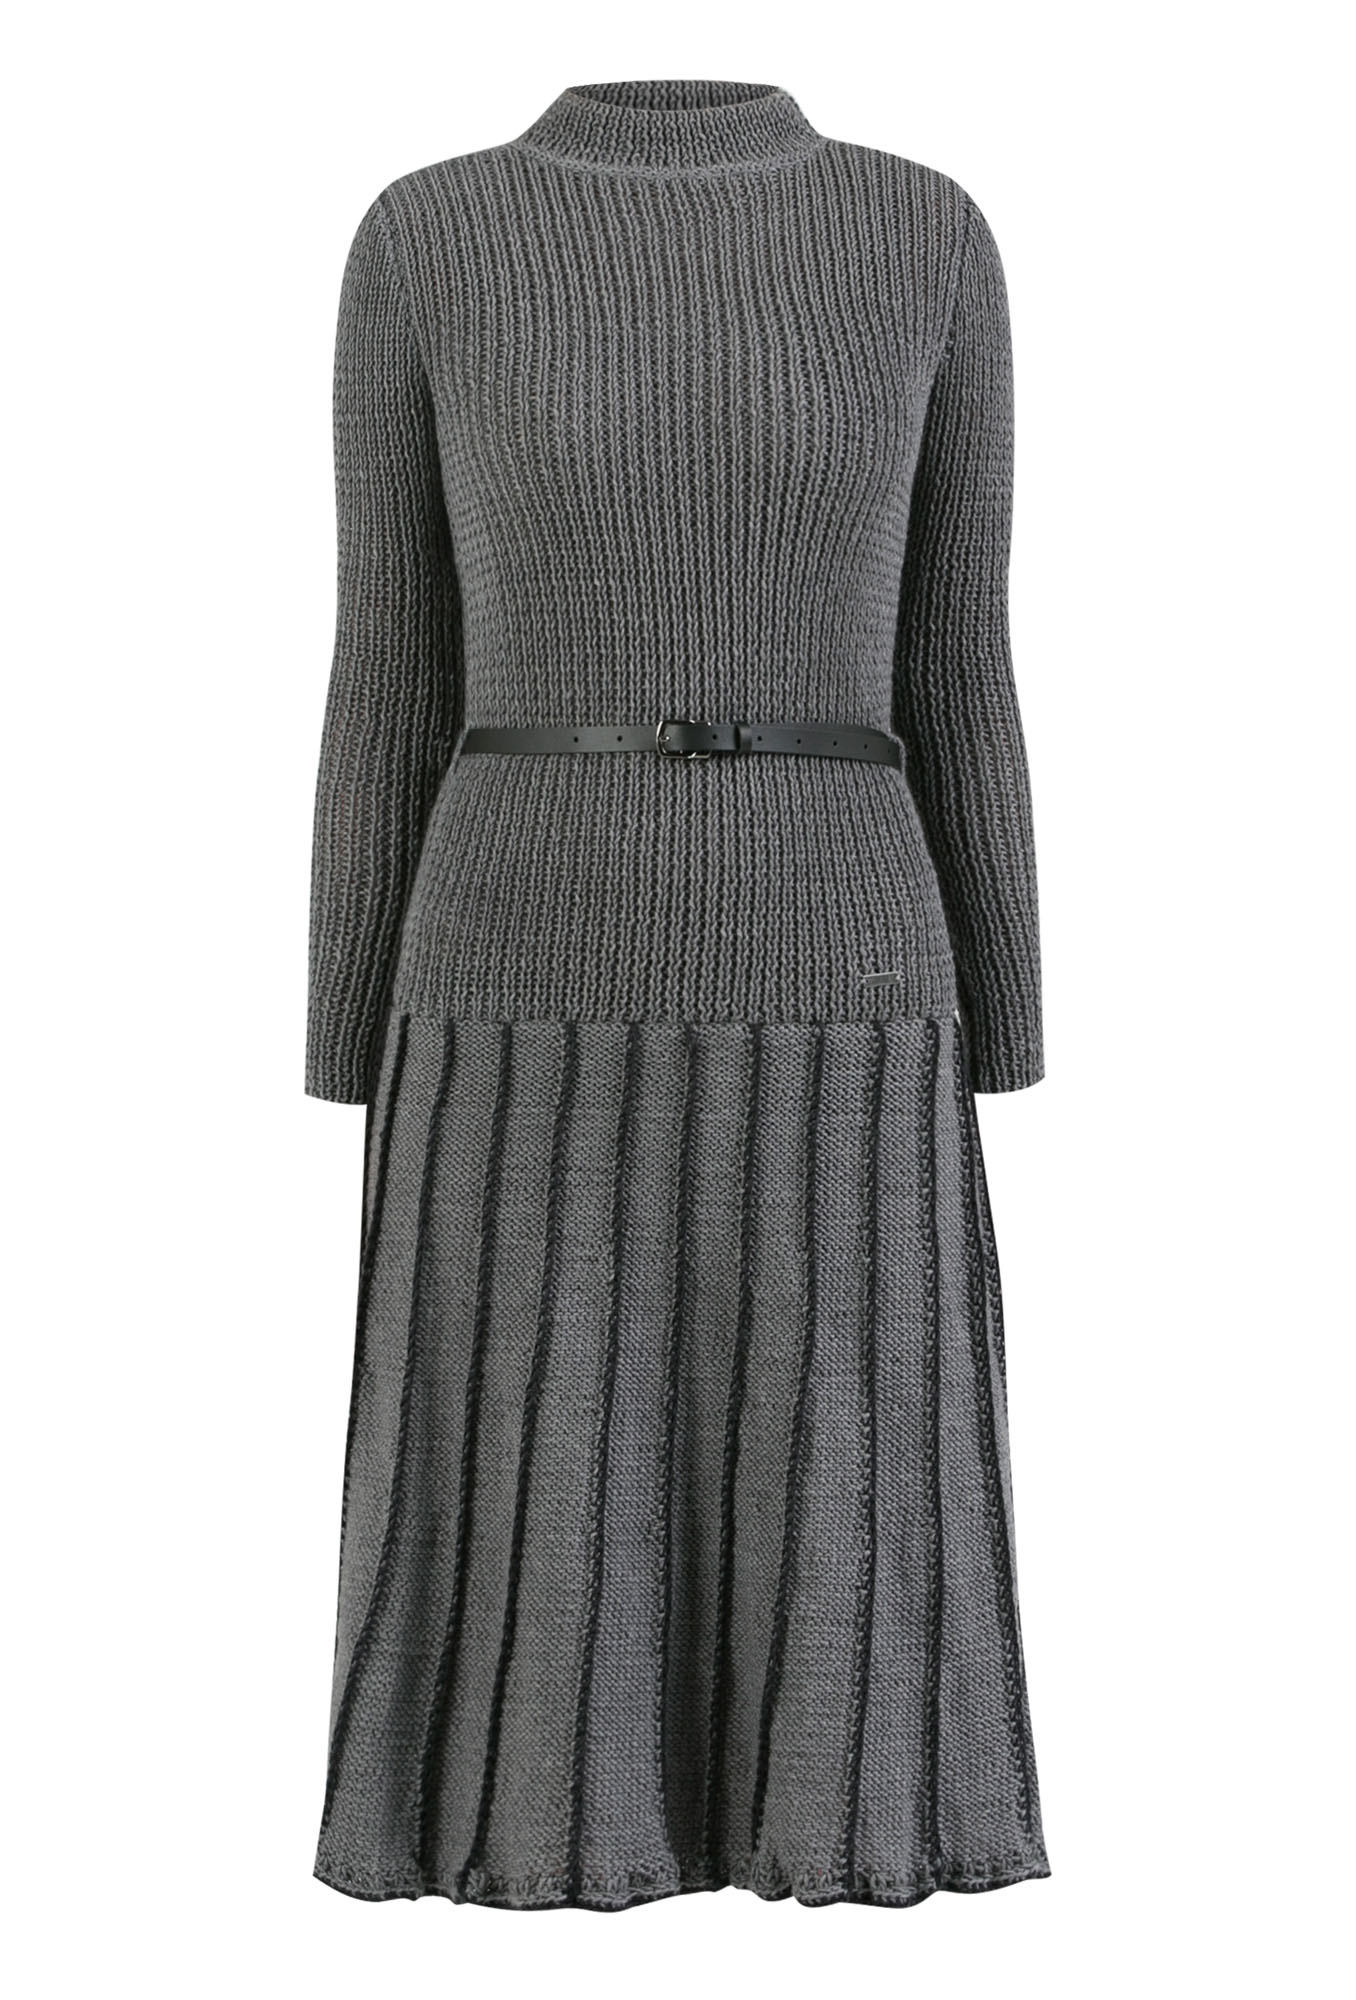 handmade dress, gray dress, 100% wool dress, over the knee dress, woolen dress, hand knitted dress, must have dress